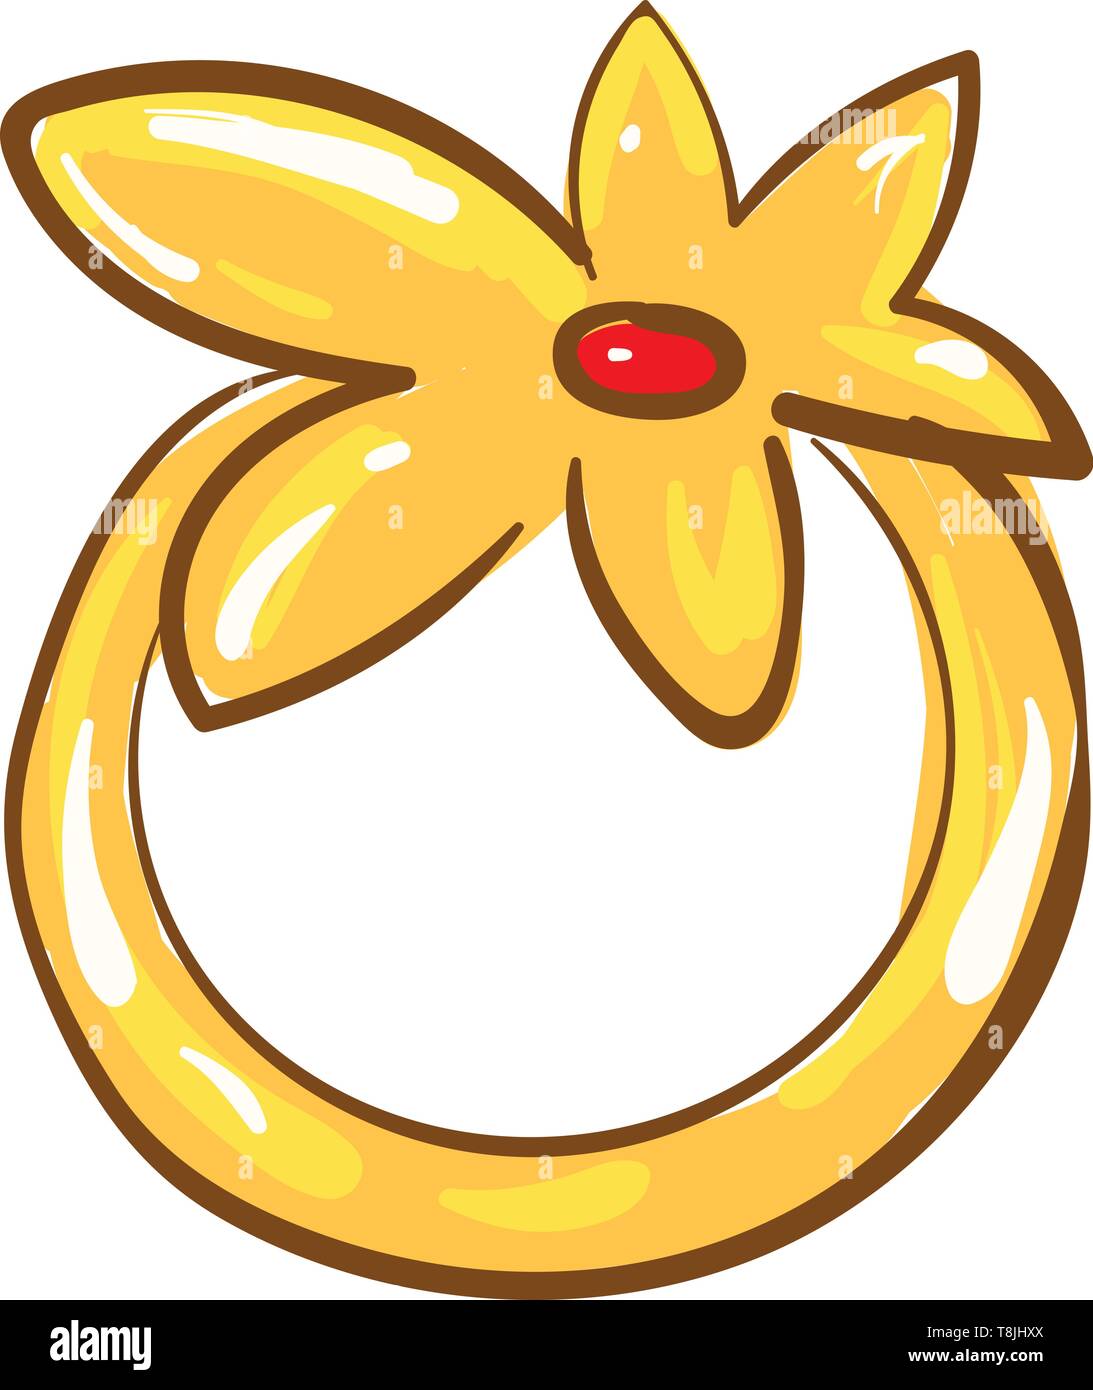 Ein Bild von einem gelben/Goldenen Blume Ring mit einem roten Stein, Vector, Farbe, Zeichnung oder Abbildung. Stock Vektor